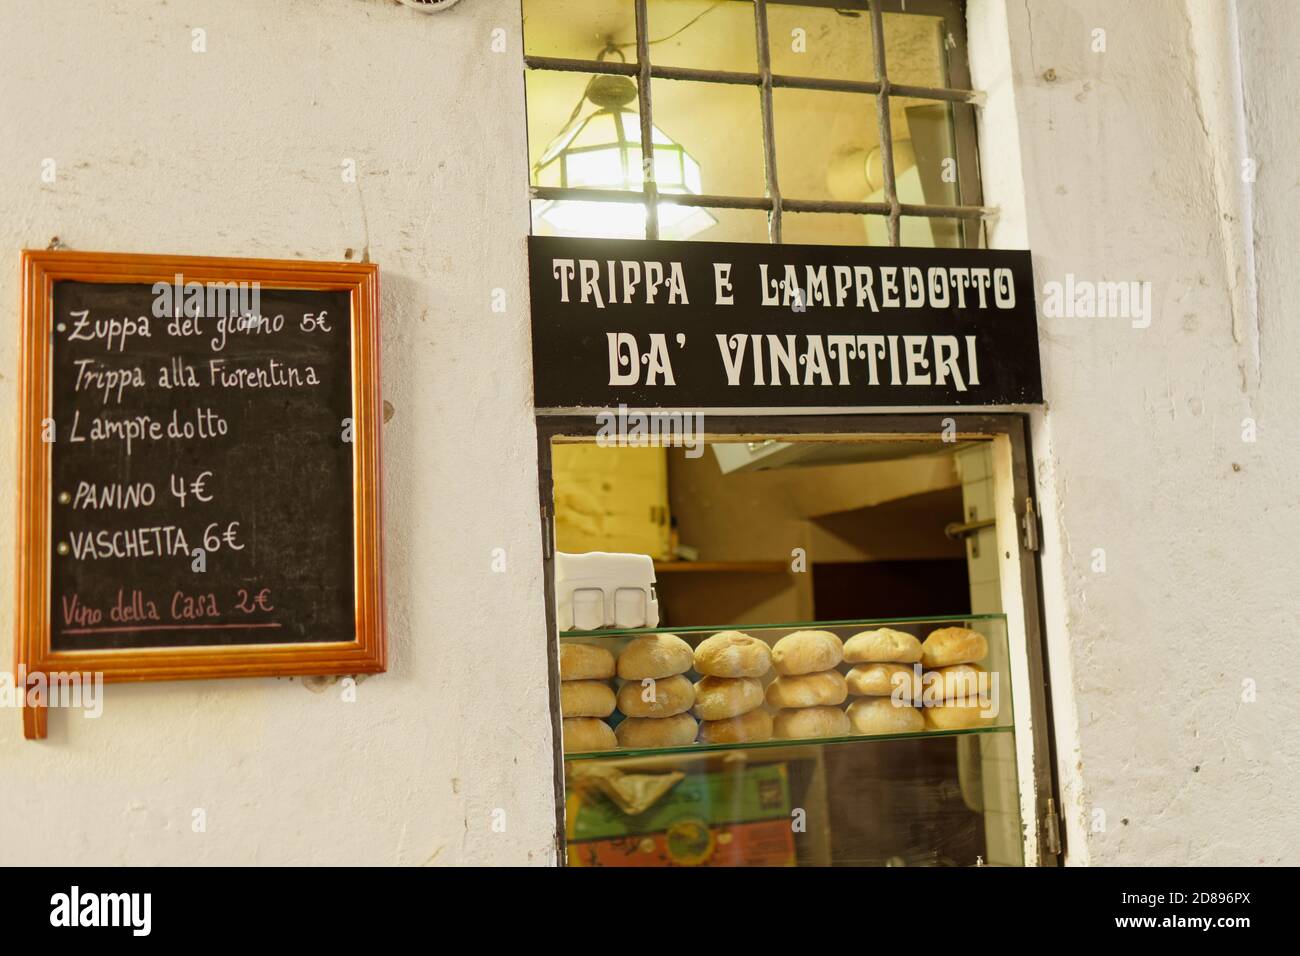 La boutique de cuisine de la rue à Florence, en Italie, propose le trippa et le lampredotto, les plats typiques de la rue florentine, le Trippa alla Fiorentina et le lampredotto Banque D'Images